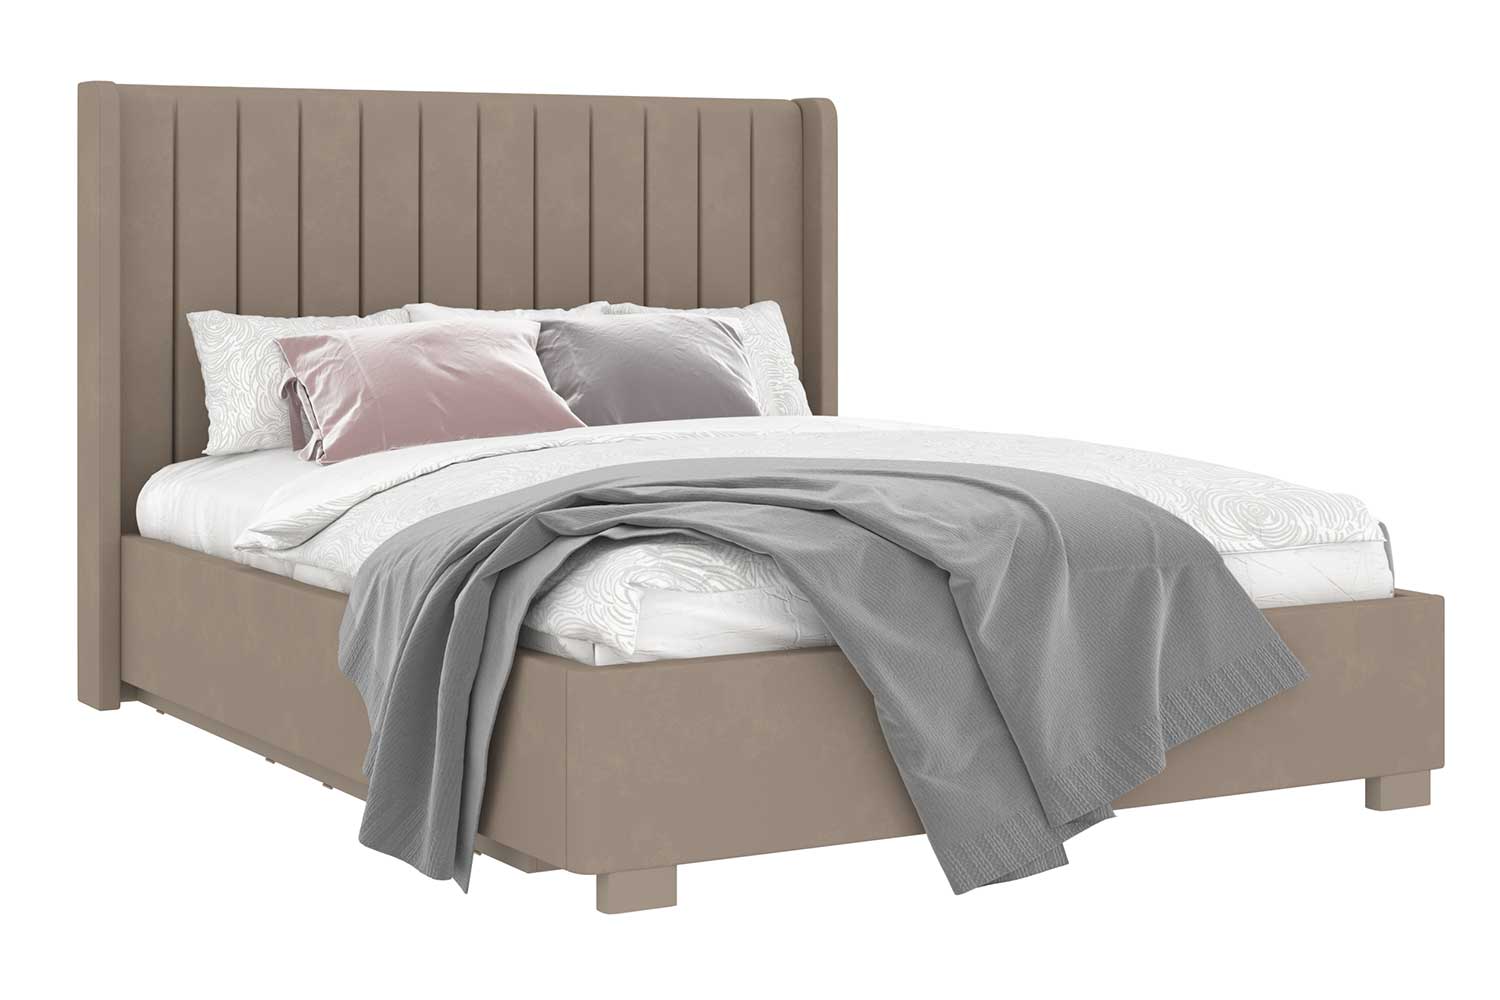 Двуспальные кровати - изображение №2 "Кровать Аделия"  на www.Angstrem-mebel.ru